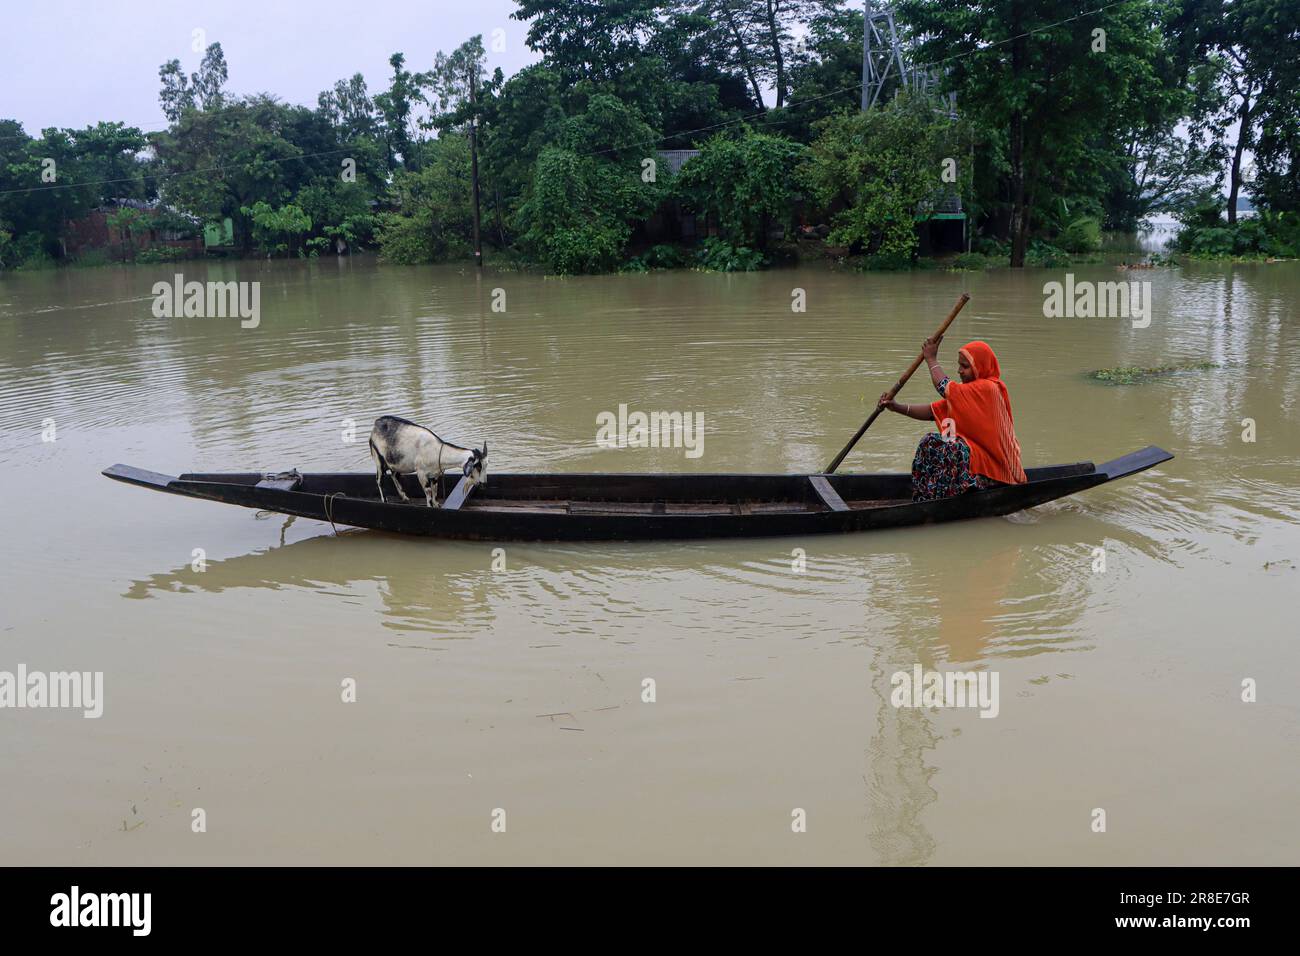 En raison des pluies continues et des pentes de colline, le niveau d'eau des rivières et des cours d'eau augmente et l'eau entre dans la localité. Il y a un risque d'inondation. Une femme rogne un bateau vers le sol supérieur pour nourrir ses chèvres. Nandir Gao Union de Goainghat Upazila. Sylhet, Bangladesh. Banque D'Images